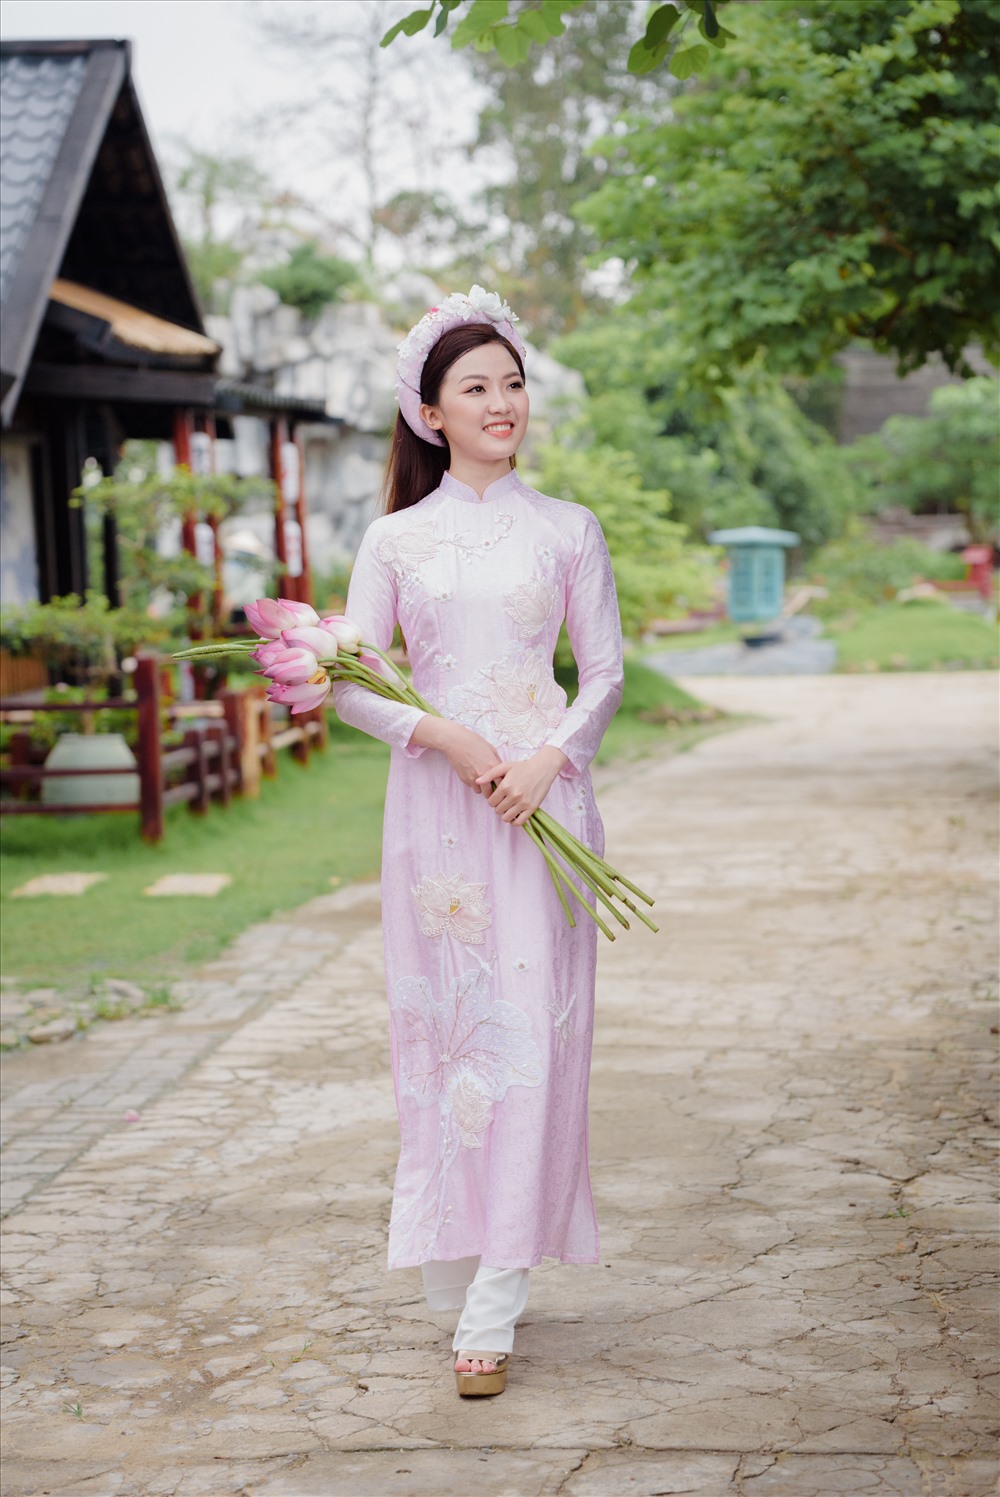 Còn nữ diễn viên Lương Thanh lại dịu dàng và nền nã.